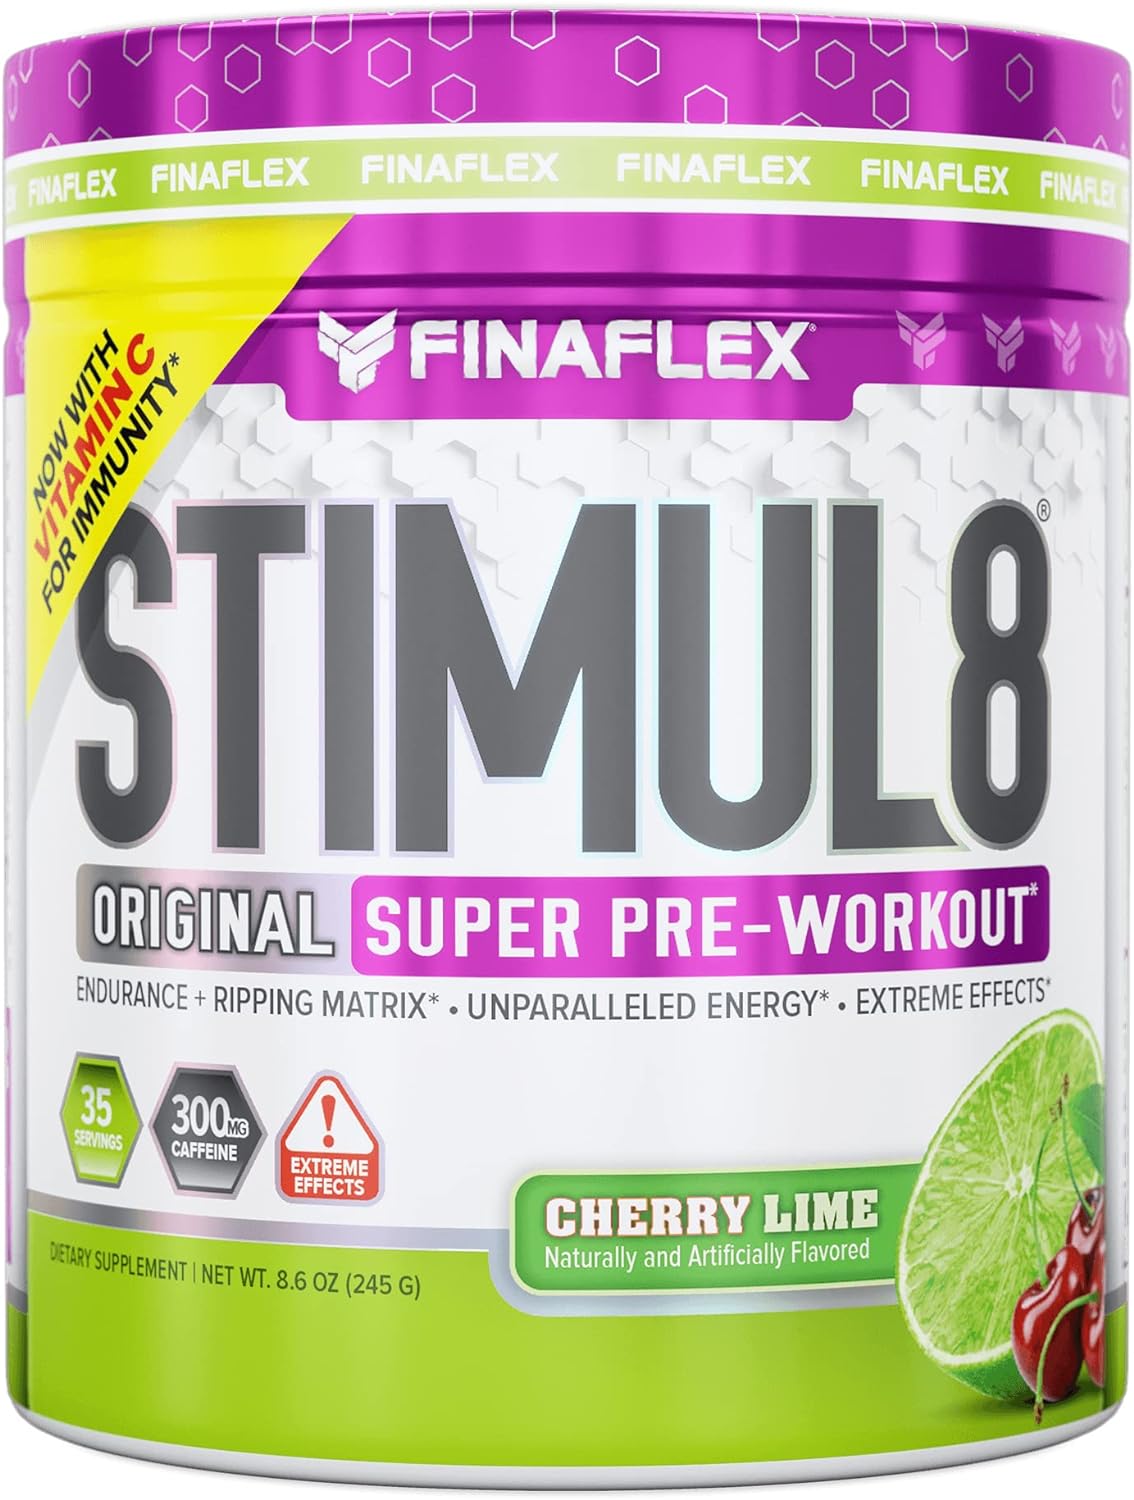 FINAFLEX STIMUL8 Original Super Pre-Workout, Cherry Lime - Energy, Str